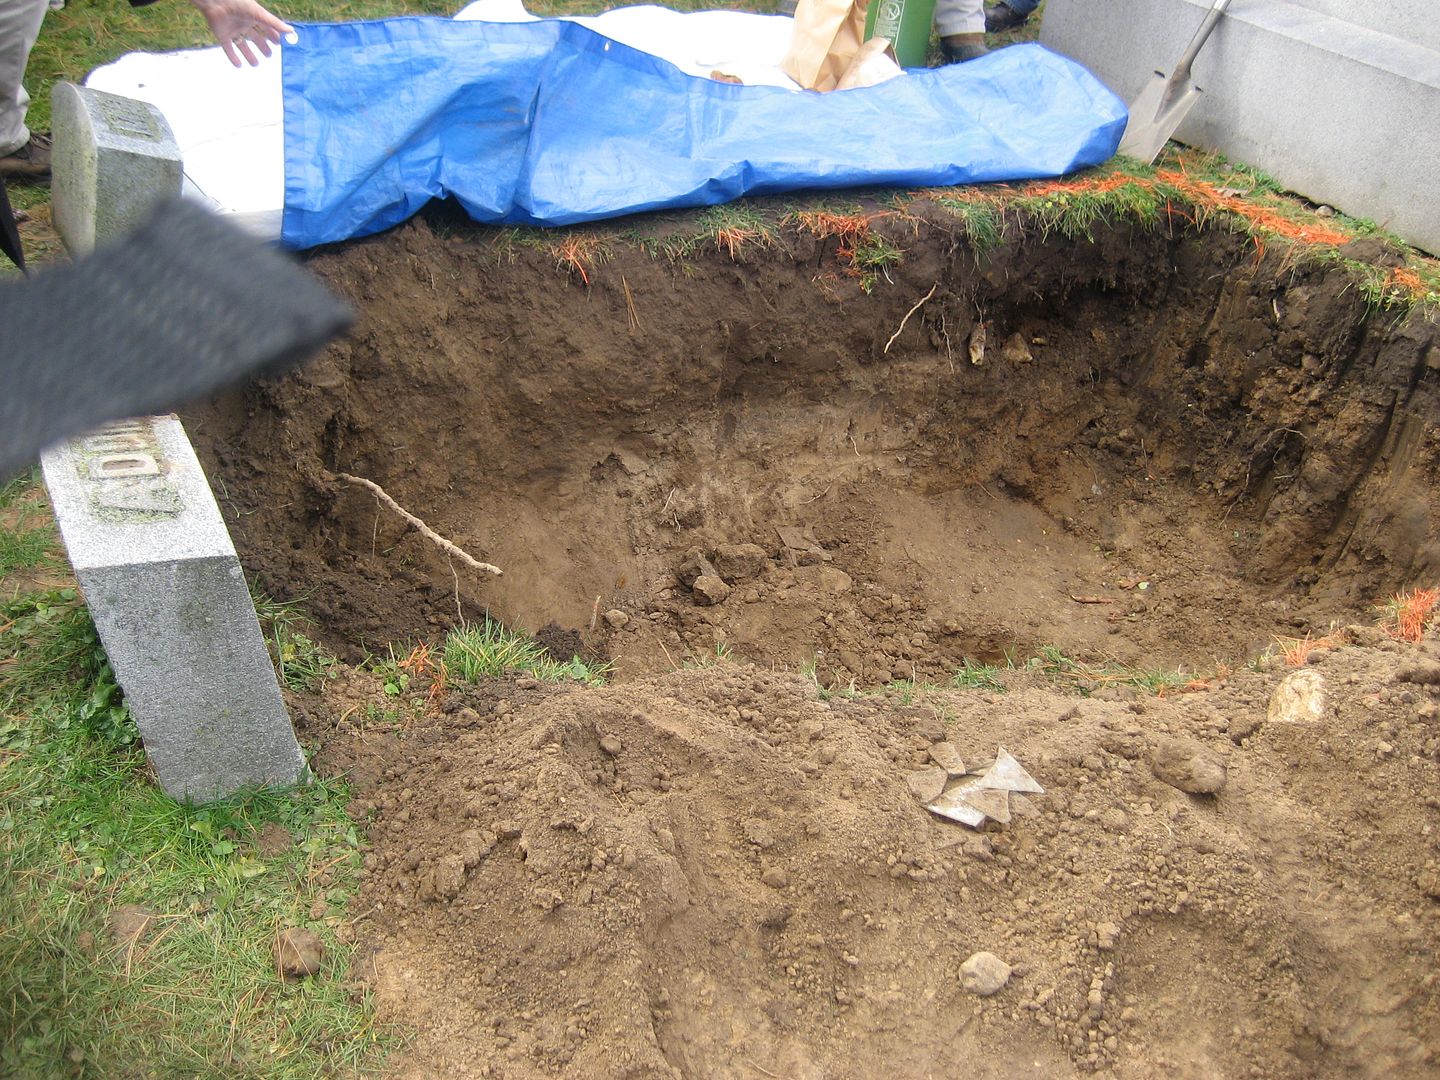 Addies grave was empty by 12:00 noon. 